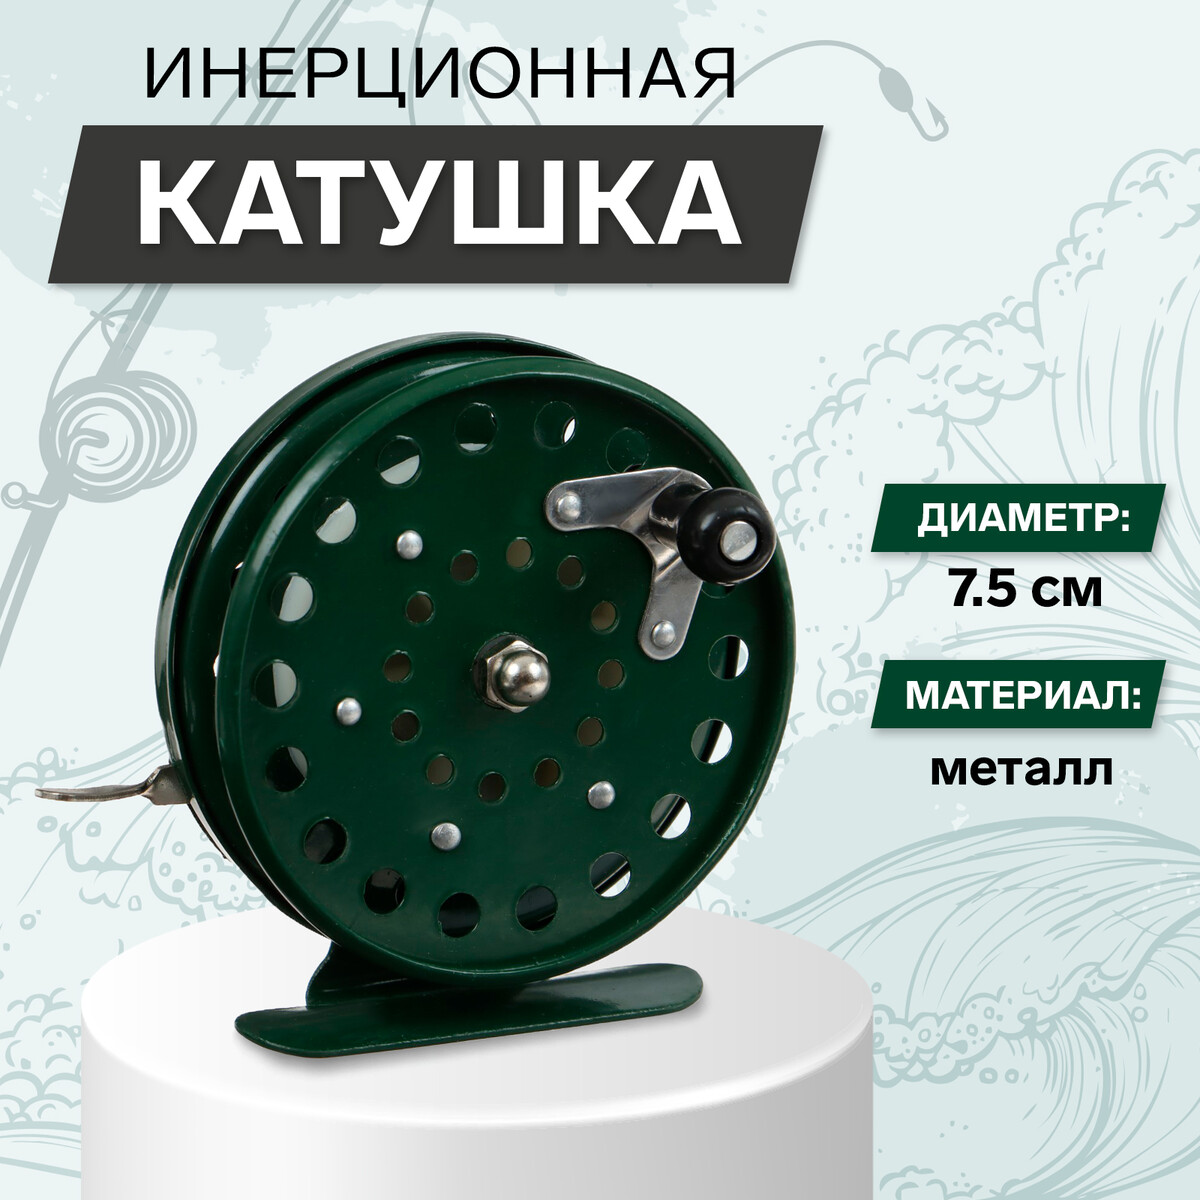 Катушка инерционная, металл, диаметр 7.5 см, цвет темно-зеленый, 809